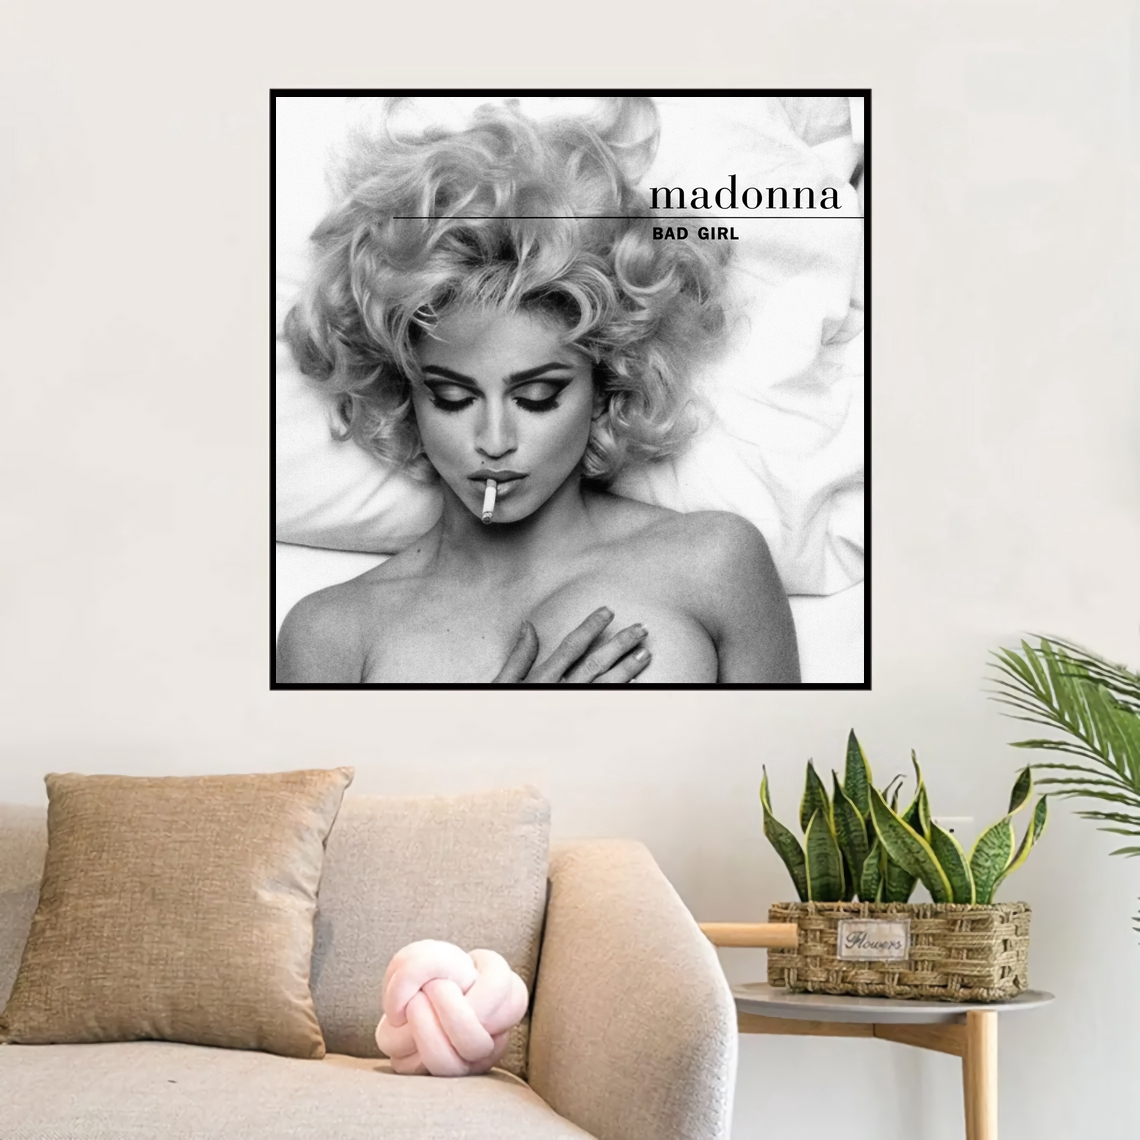 Madonna Bad Girl Fever Music Album Album Cover Poster Leinwand Kunst Print Home Decor Wandmalerei kein Rahmen